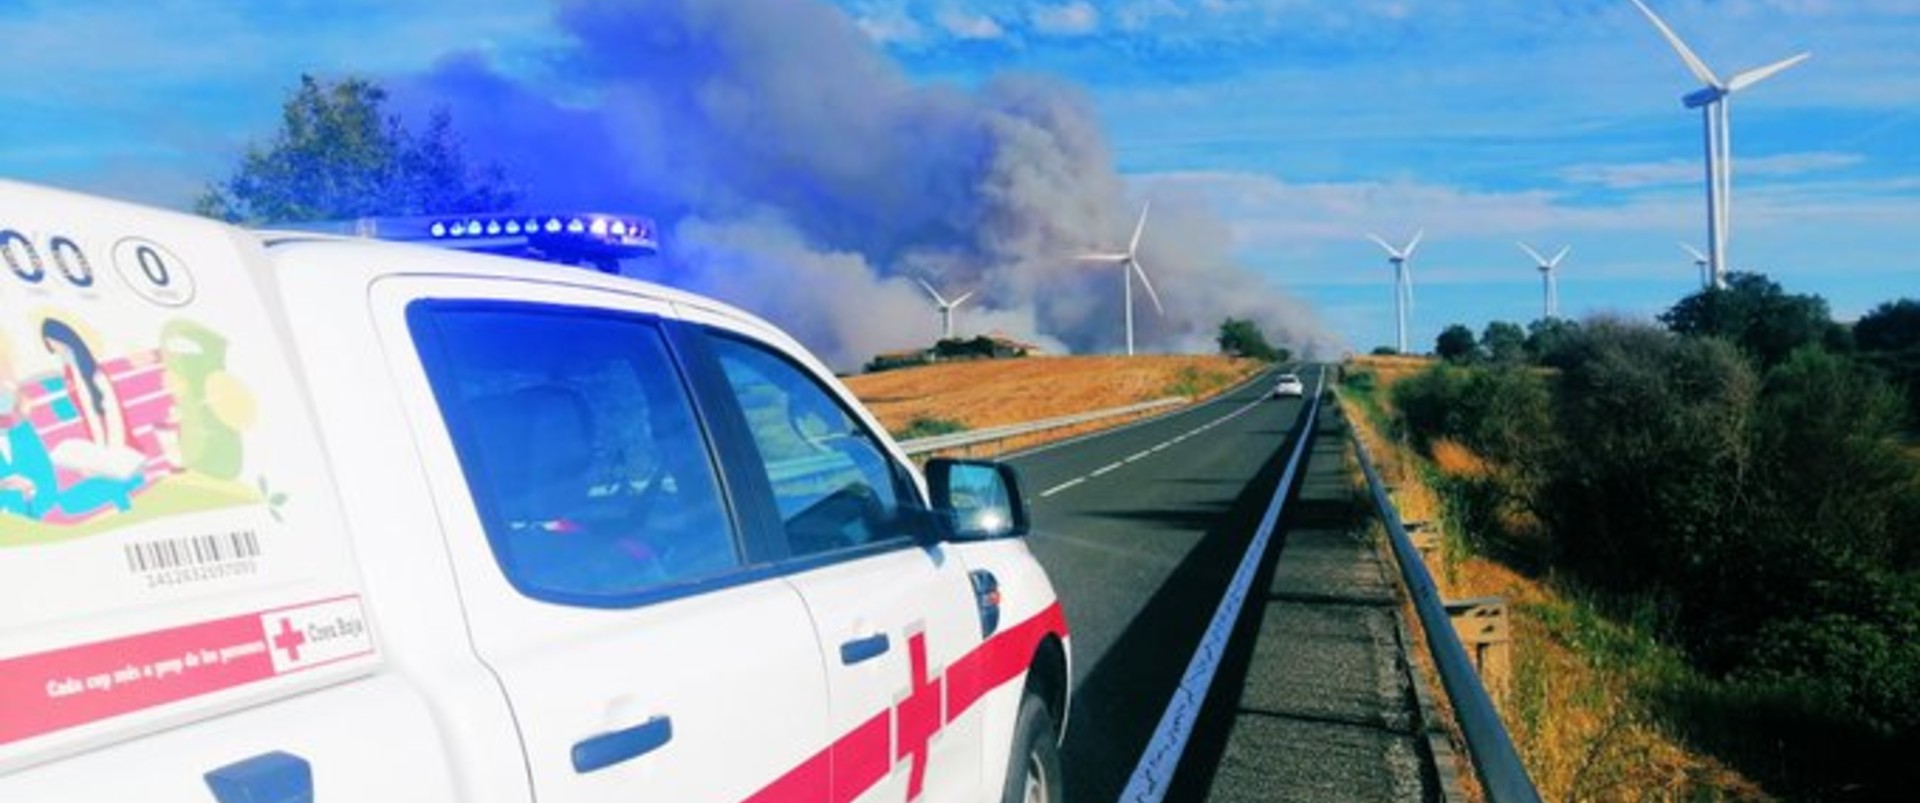 Sin tregua: Cruz Roja se moviliza ante los 6 incendios que han afectado Catalunya